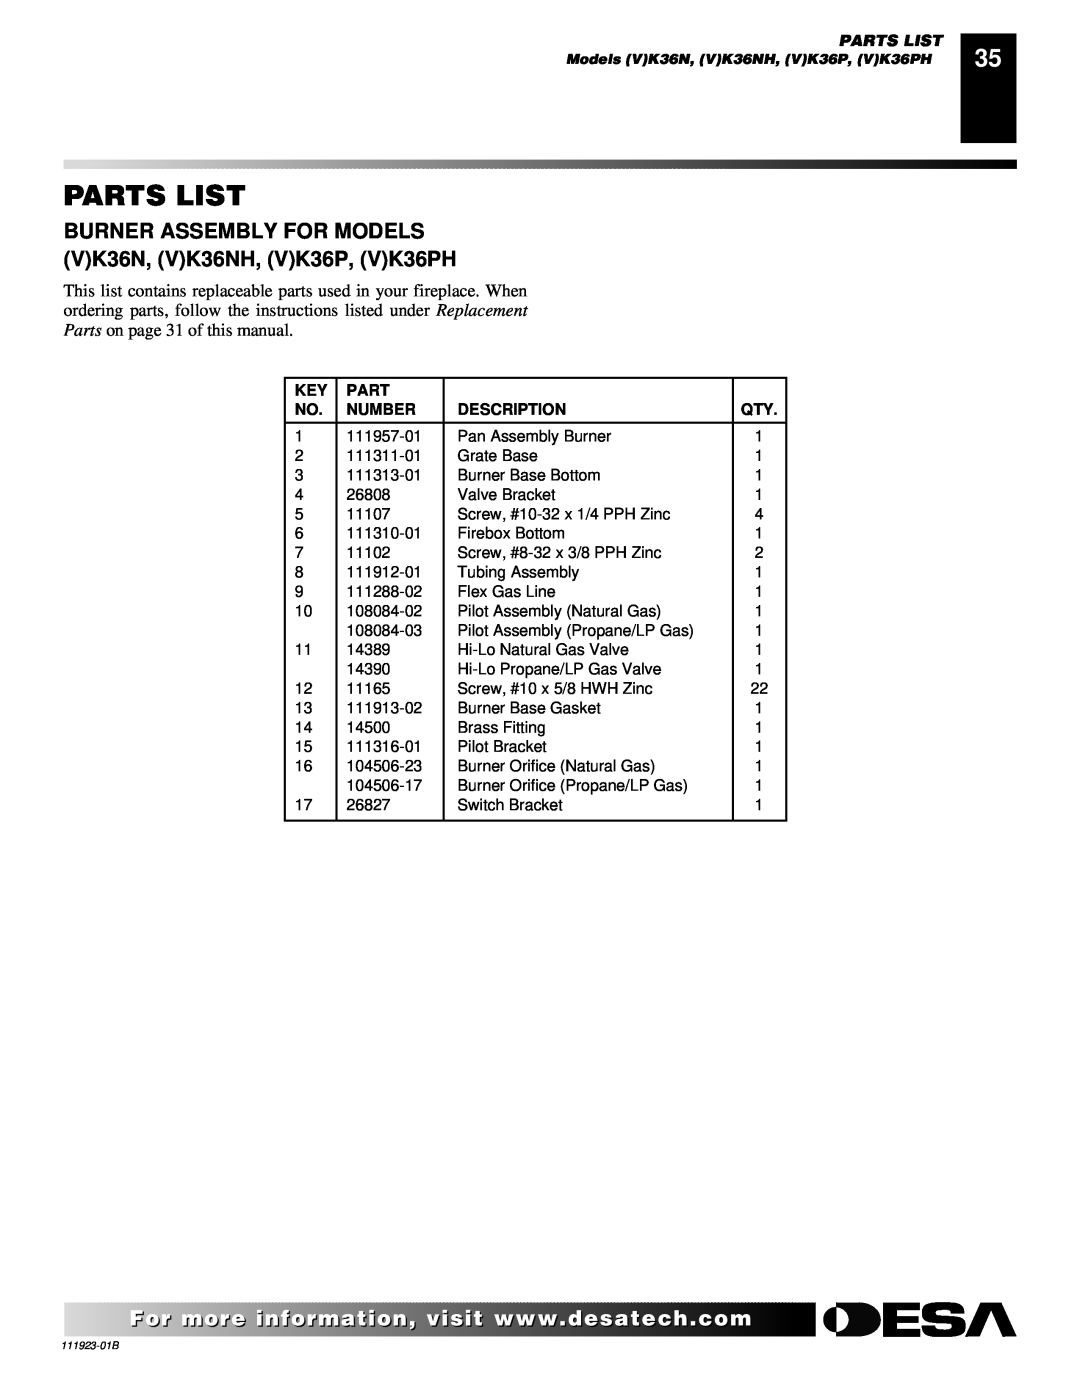 Desa (V)K36P SERIES, (V)K36N SERIES installation manual Parts List, Number, Description 